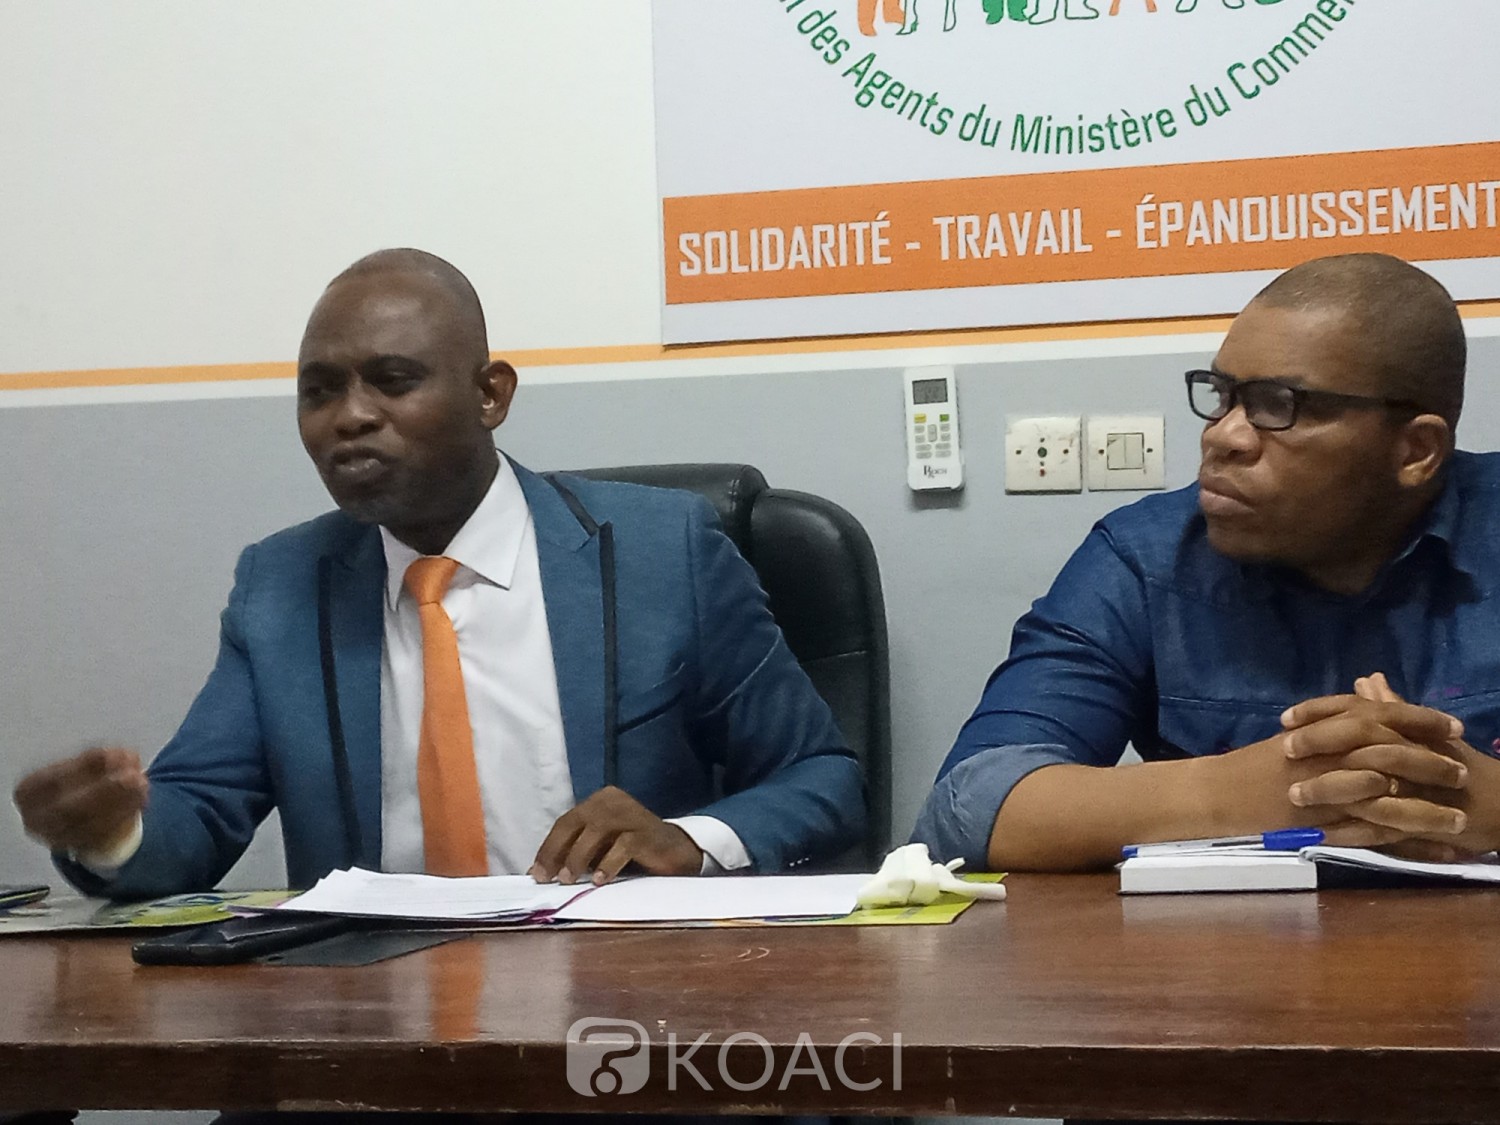 Côte d'Ivoire : Les agents du ministère du commerce menacent de boycotter tout contrôle de suivi du plafonnement des prix et exigent leur prise en compte dans le partage de la prime spéciale liée au C